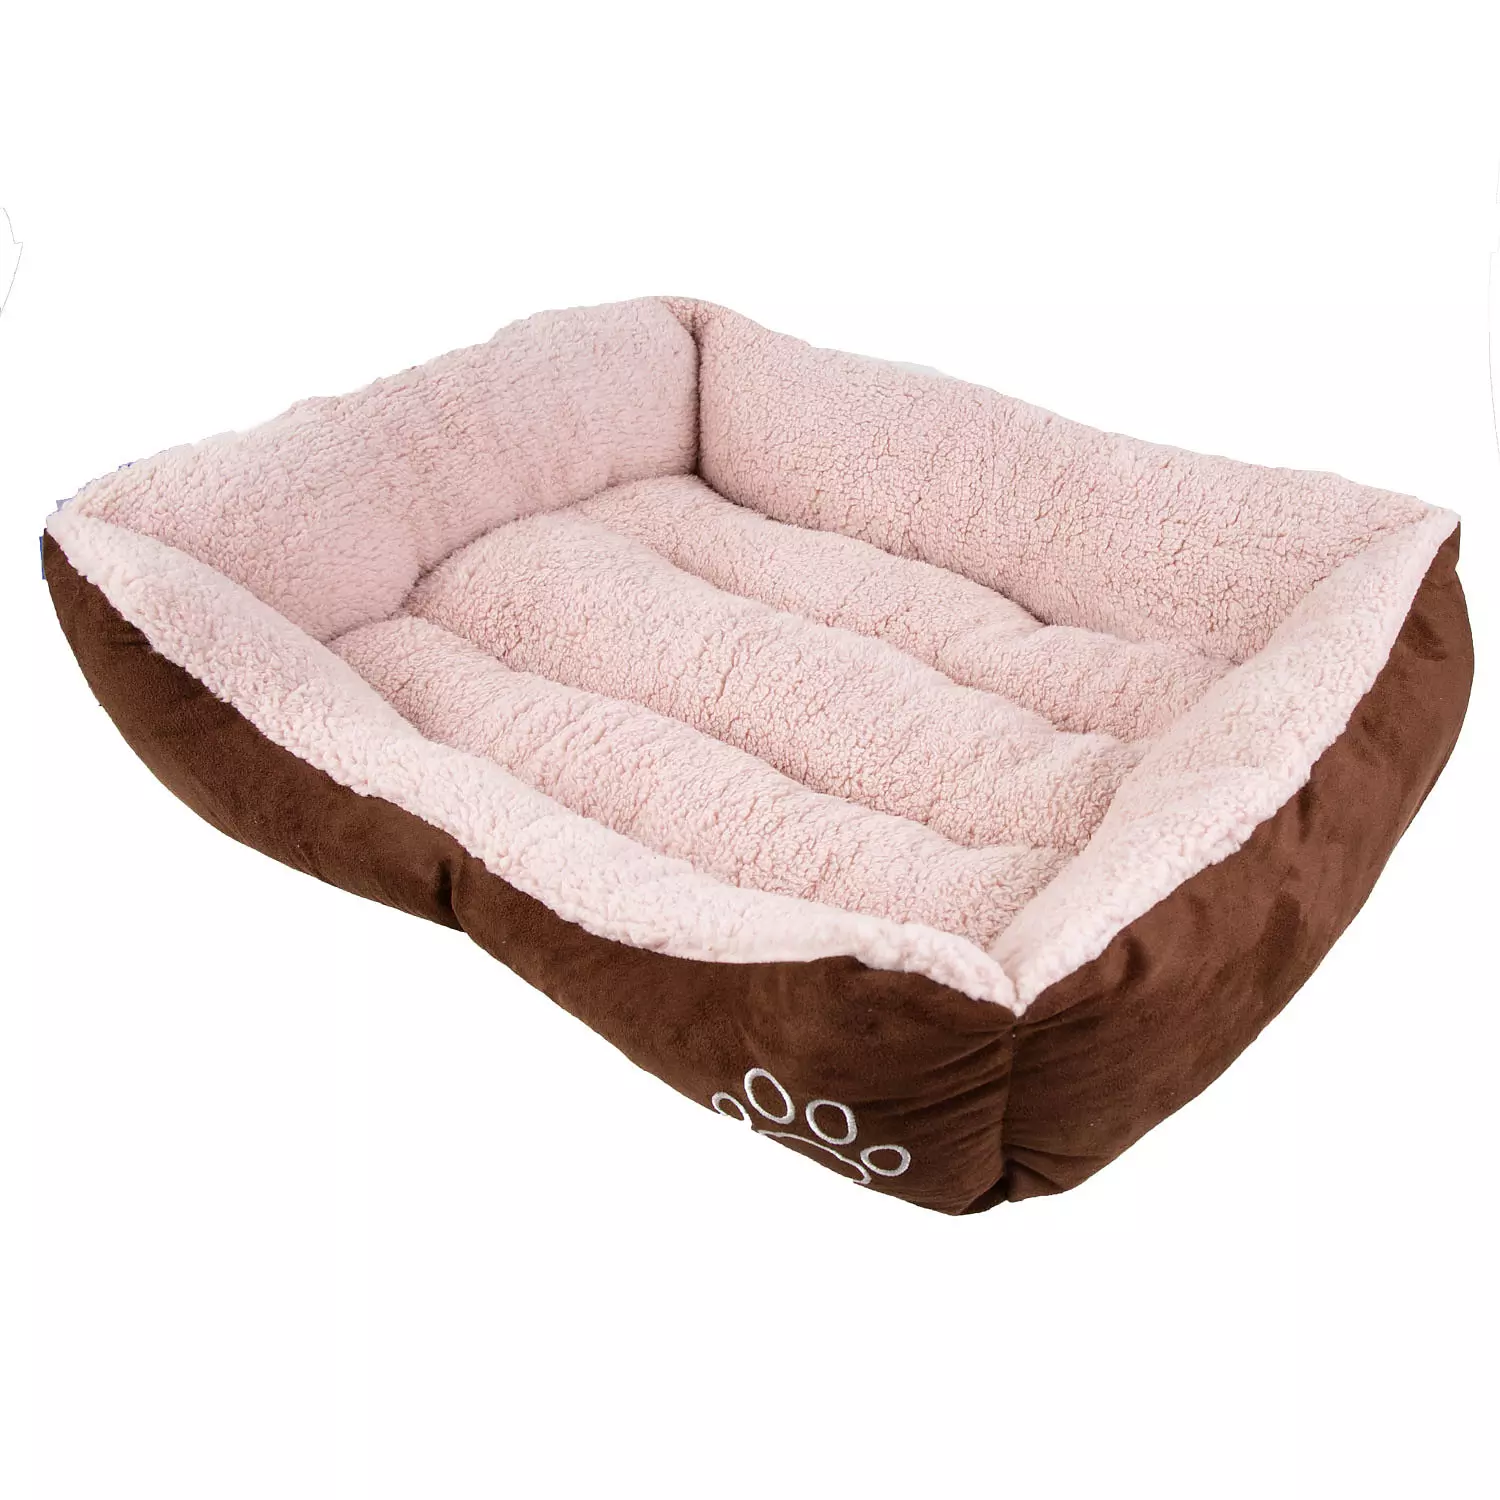 Faux suede, rectangular pet bed, medium, brown & blush